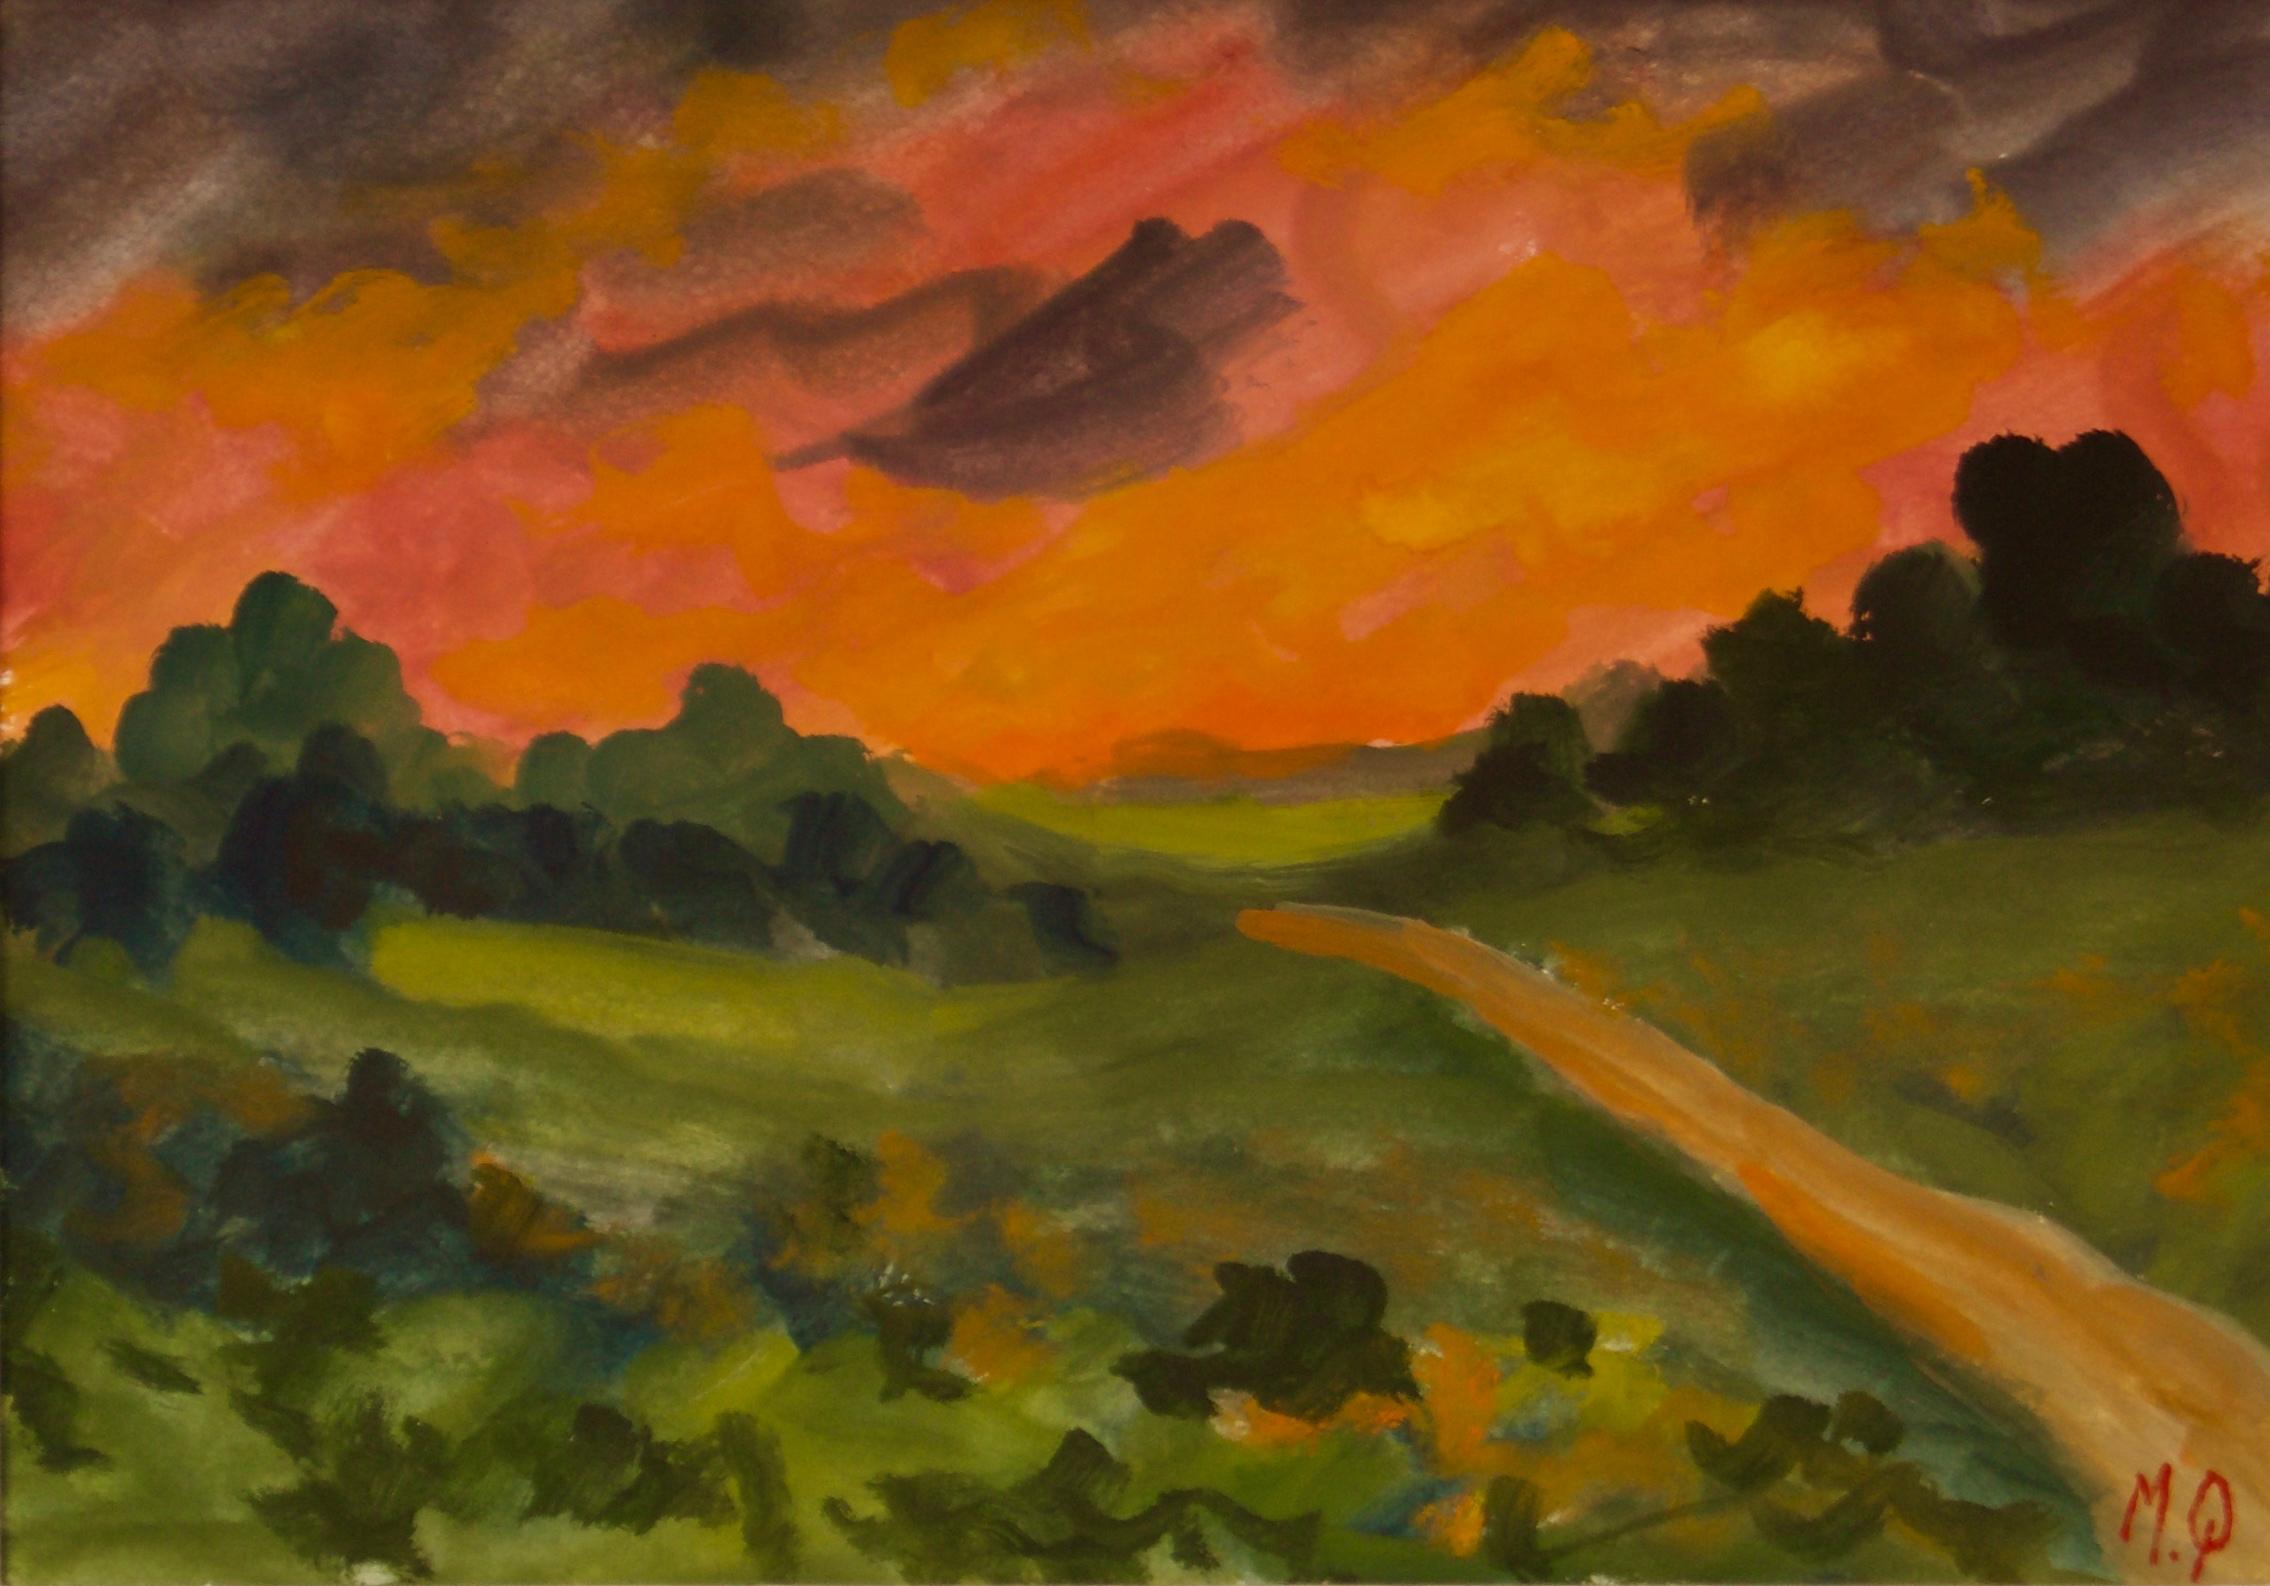 Sunset in the Country - Pièce impressionniste du début du 20e siècle par Michael Quirke